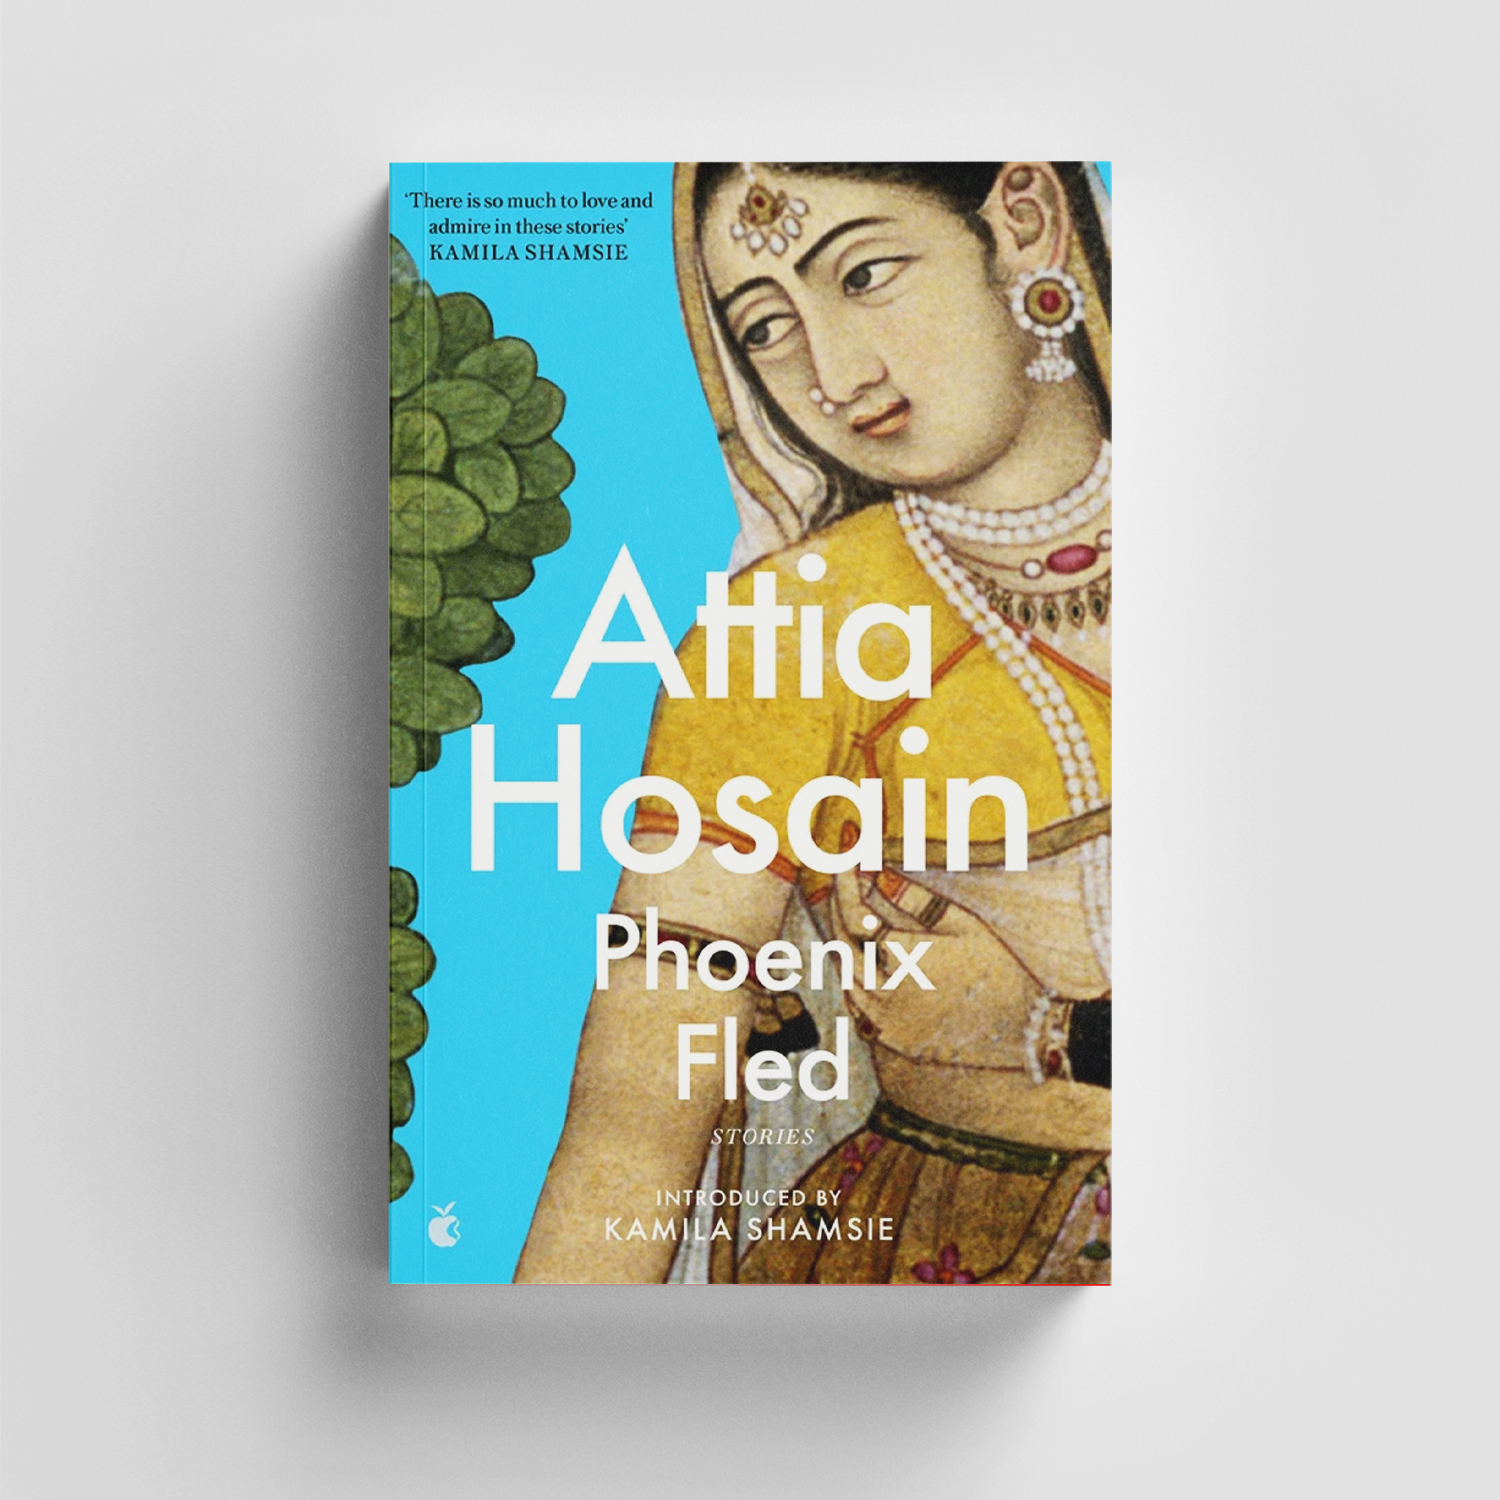 Phoenix Fled by Attia Hosain